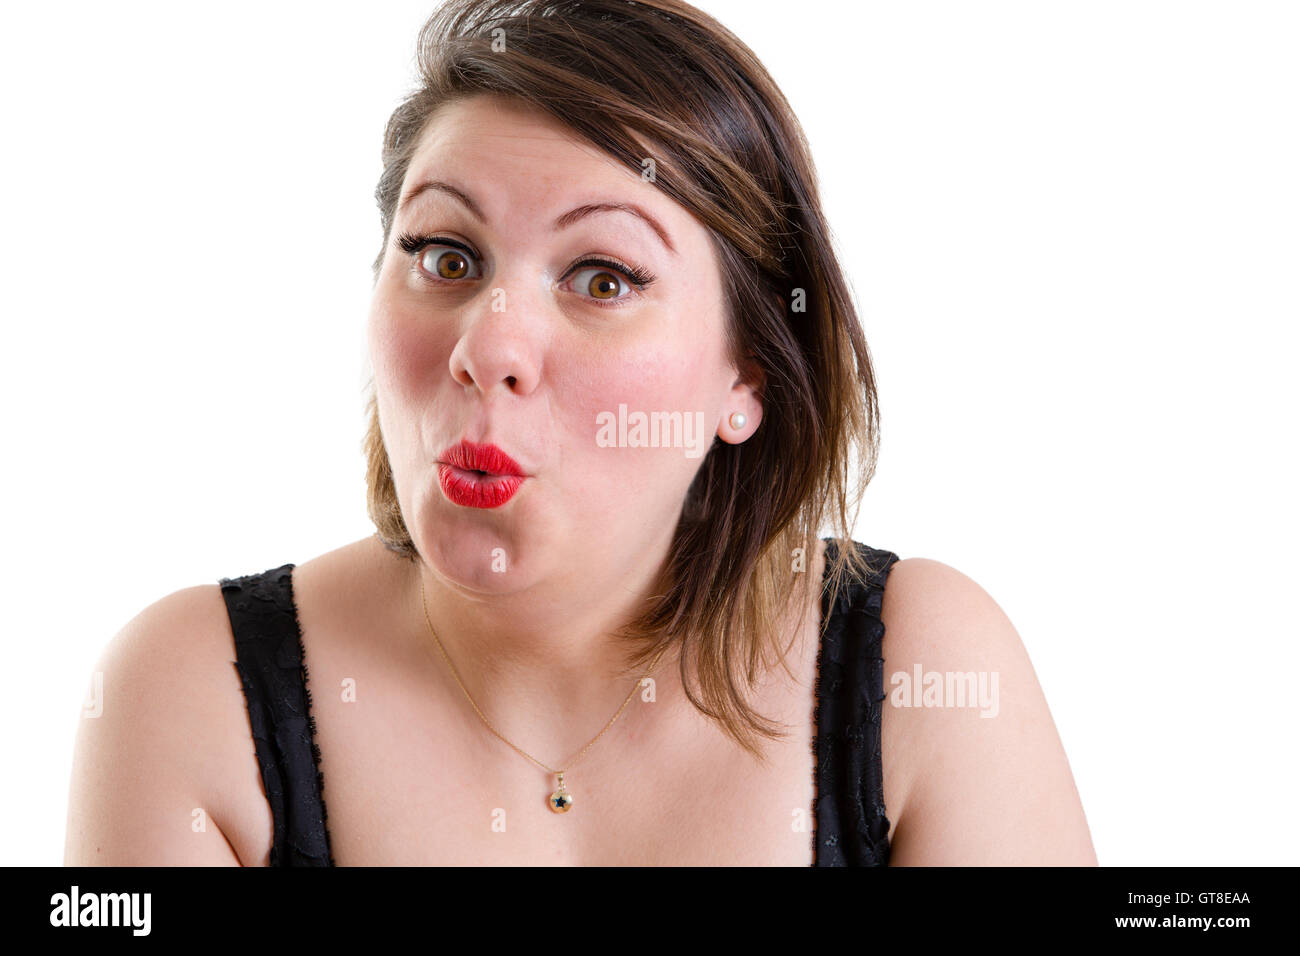 Mujer haciendo en ooh gesto con ella guiaba mostrando sus labios evaluación apreciativa o asombro, aislado en blanco Foto de stock